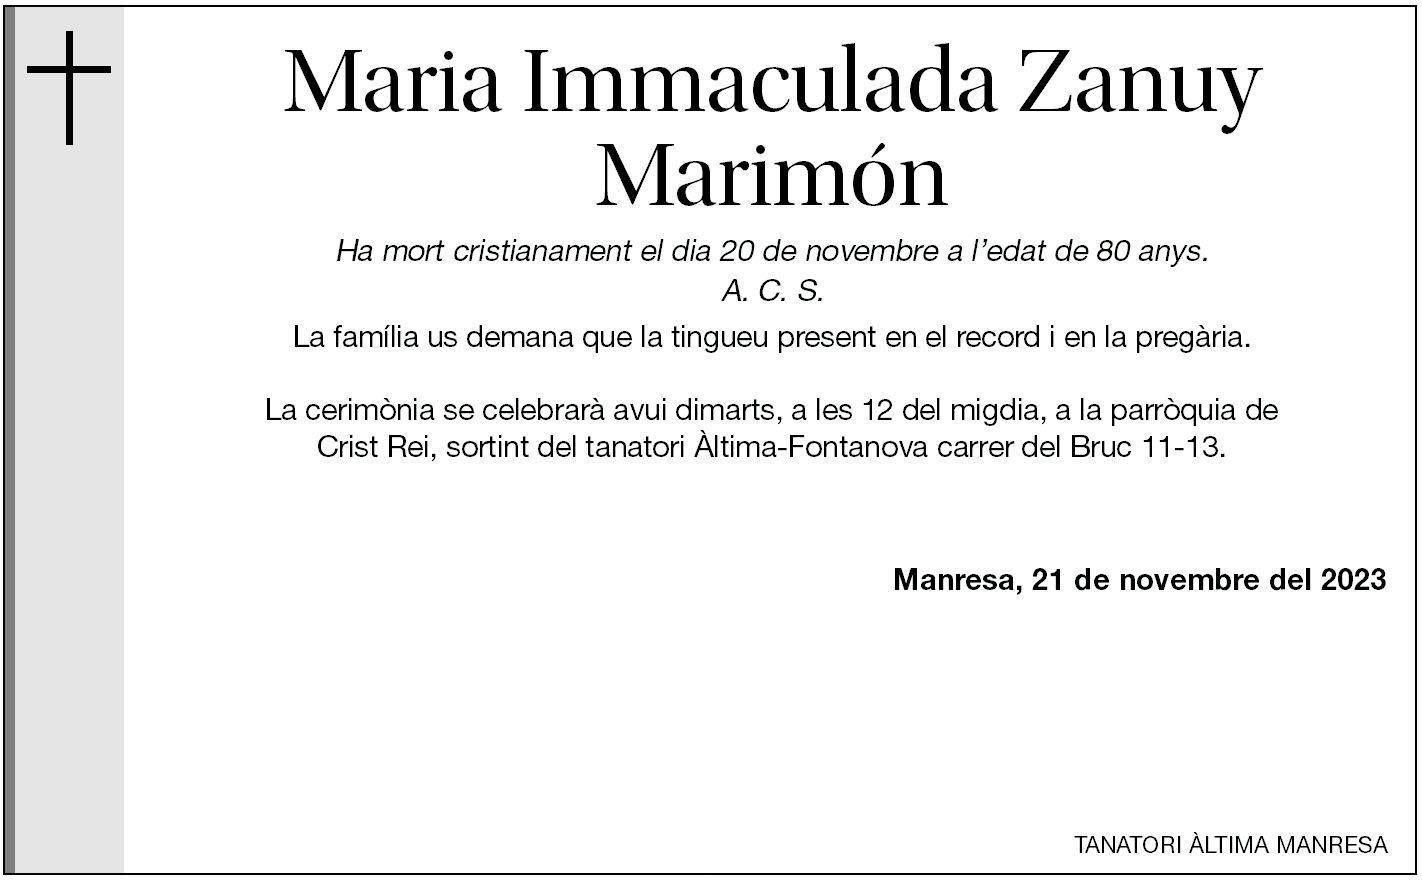 Maria Immaculada Zanuy Marimón